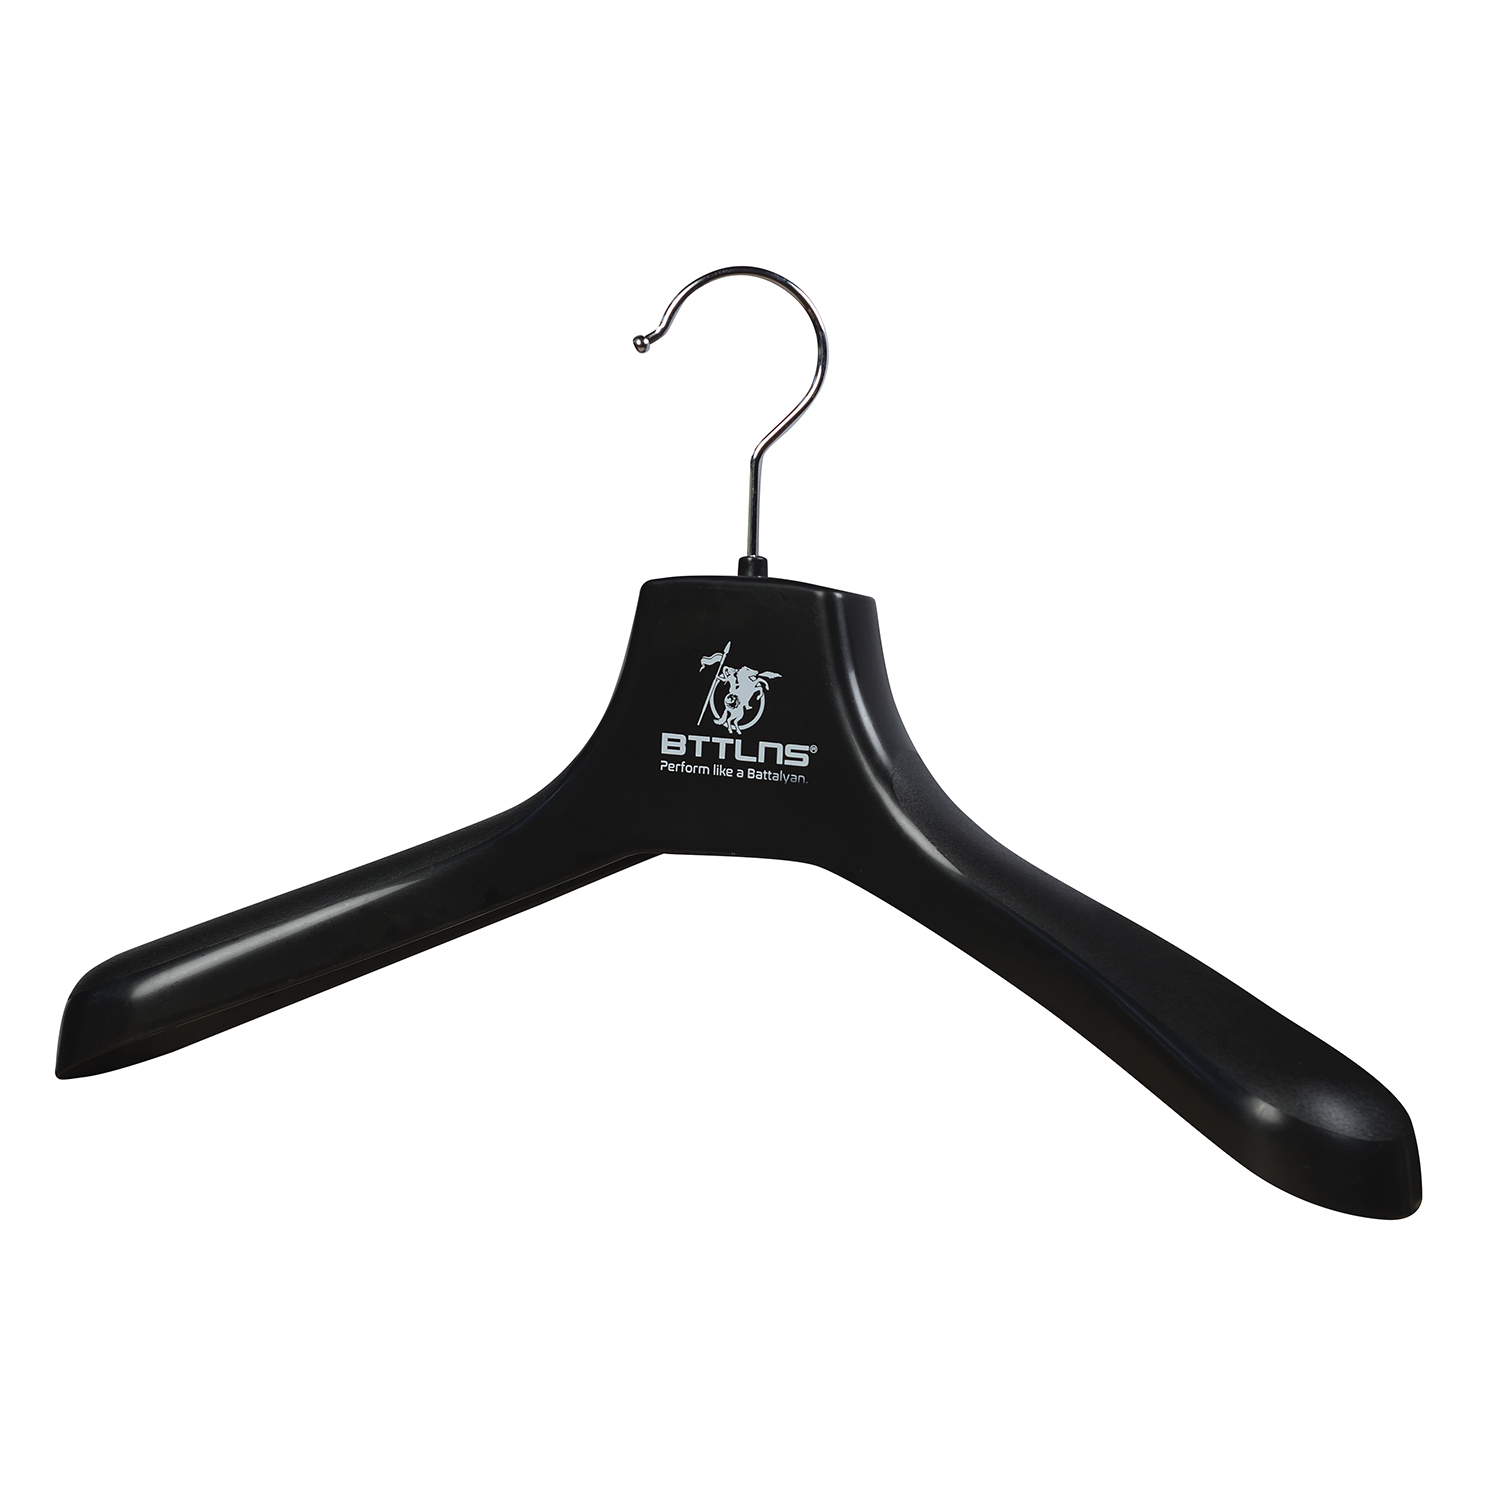 BTTLNS Wetsuit clothing hanger Defender 2.0  0320001-010